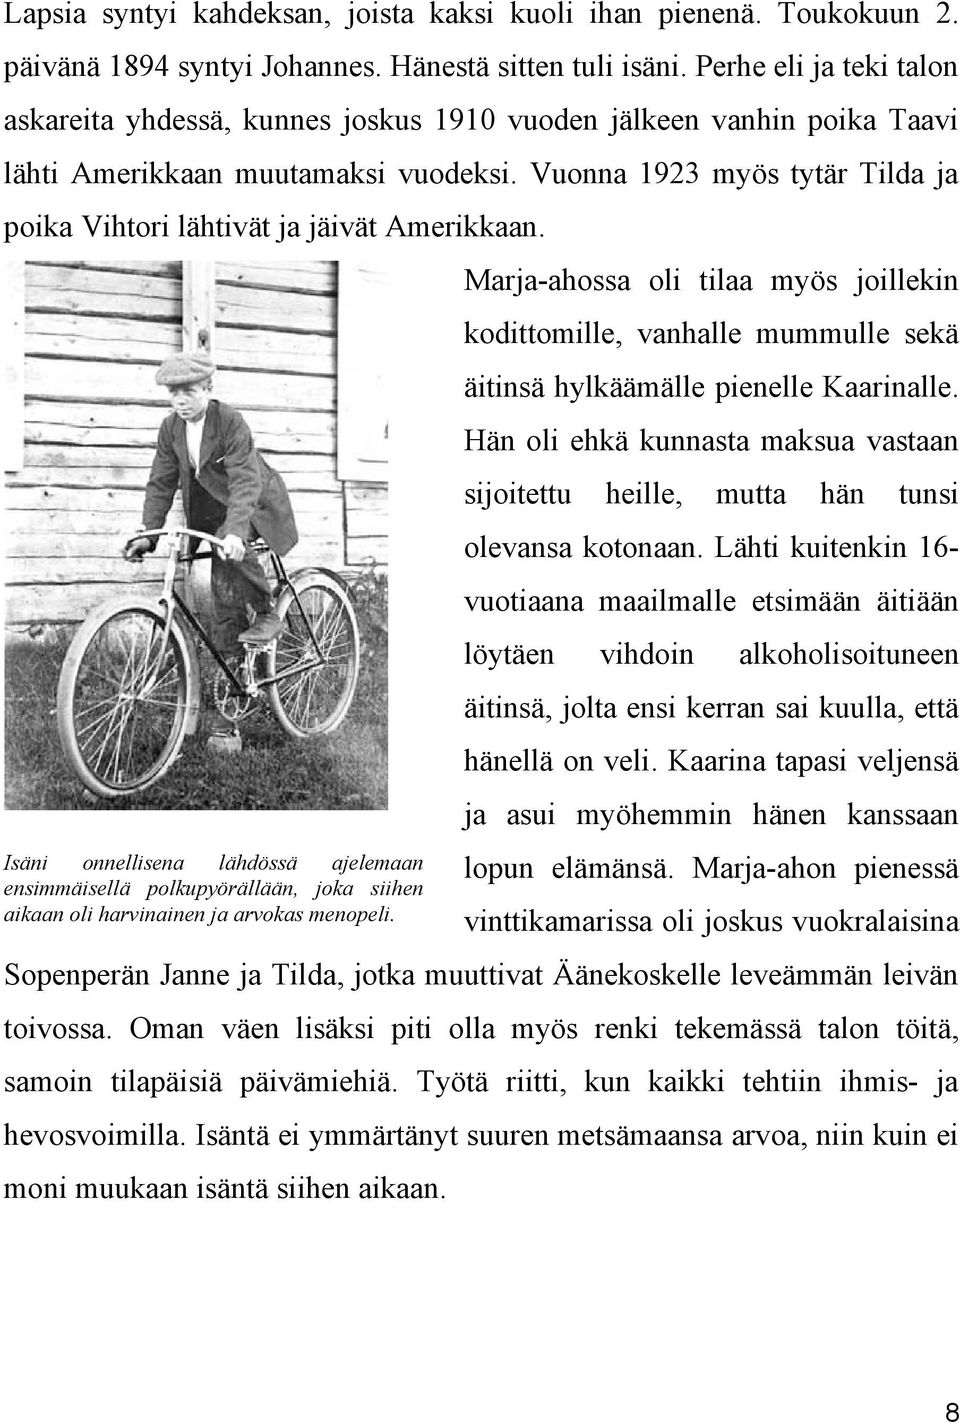 Vuonna 1923 myös tytär Tilda ja poika Vihtori lähtivät ja jäivät Amerikkaan. Isäni onnellisena lähdössä ajelemaan ensimmäisellä polkupyörällään, joka siihen aikaan oli harvinainen ja arvokas menopeli.